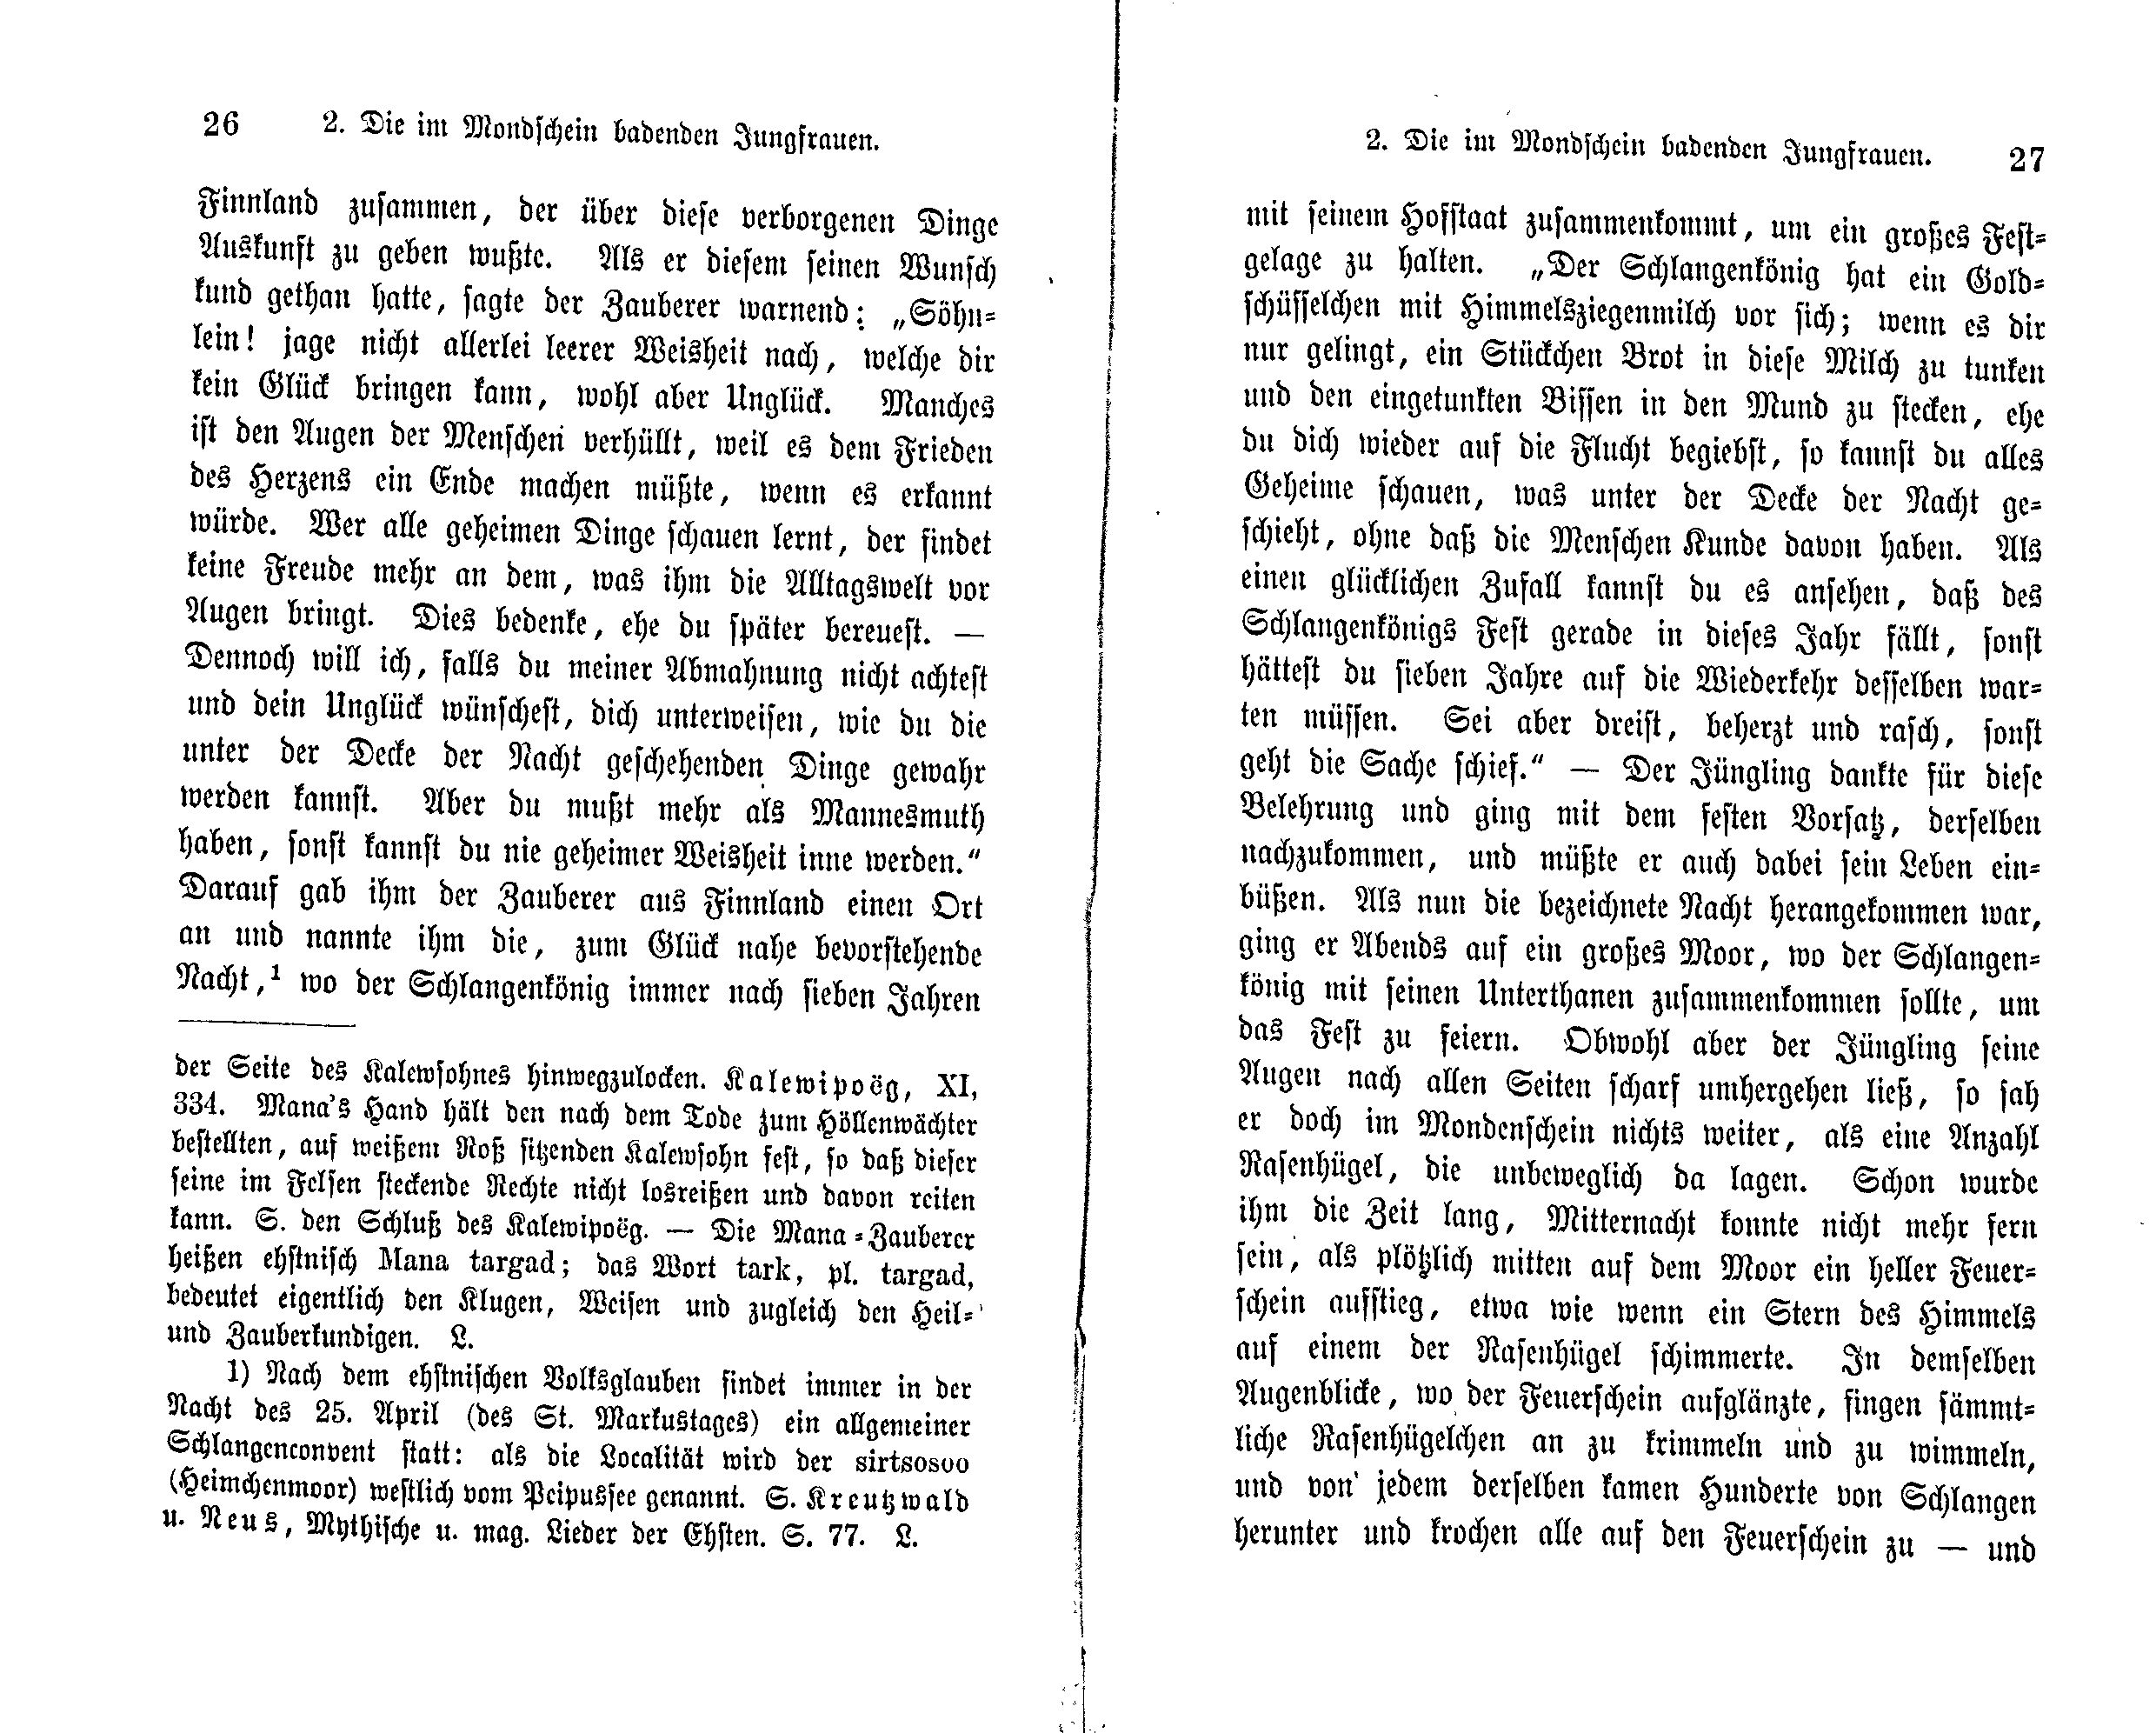 Die im Mondschein badenden Jungfrauen (1869) | 2. (26-27) Main body of text